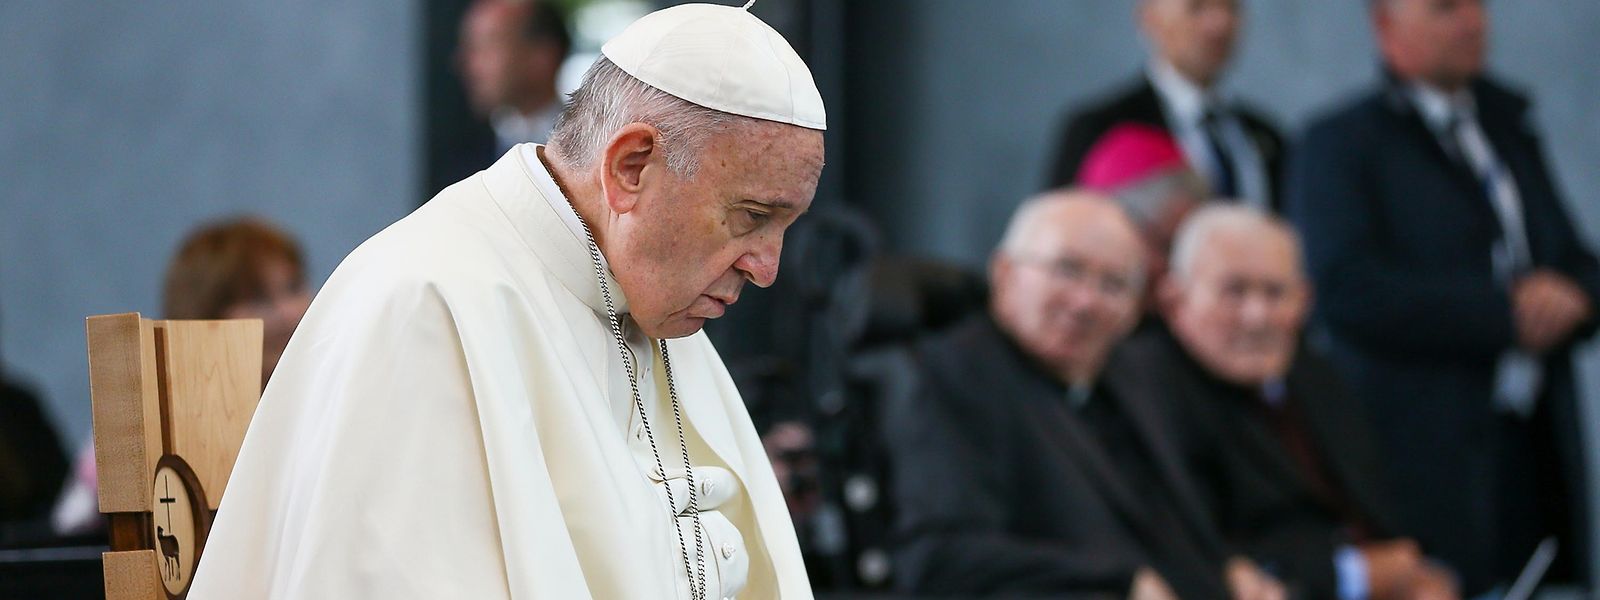 Der Papst besuchte Irland am Wochenende und nahm zum Thema Missbrauch Stellung. 